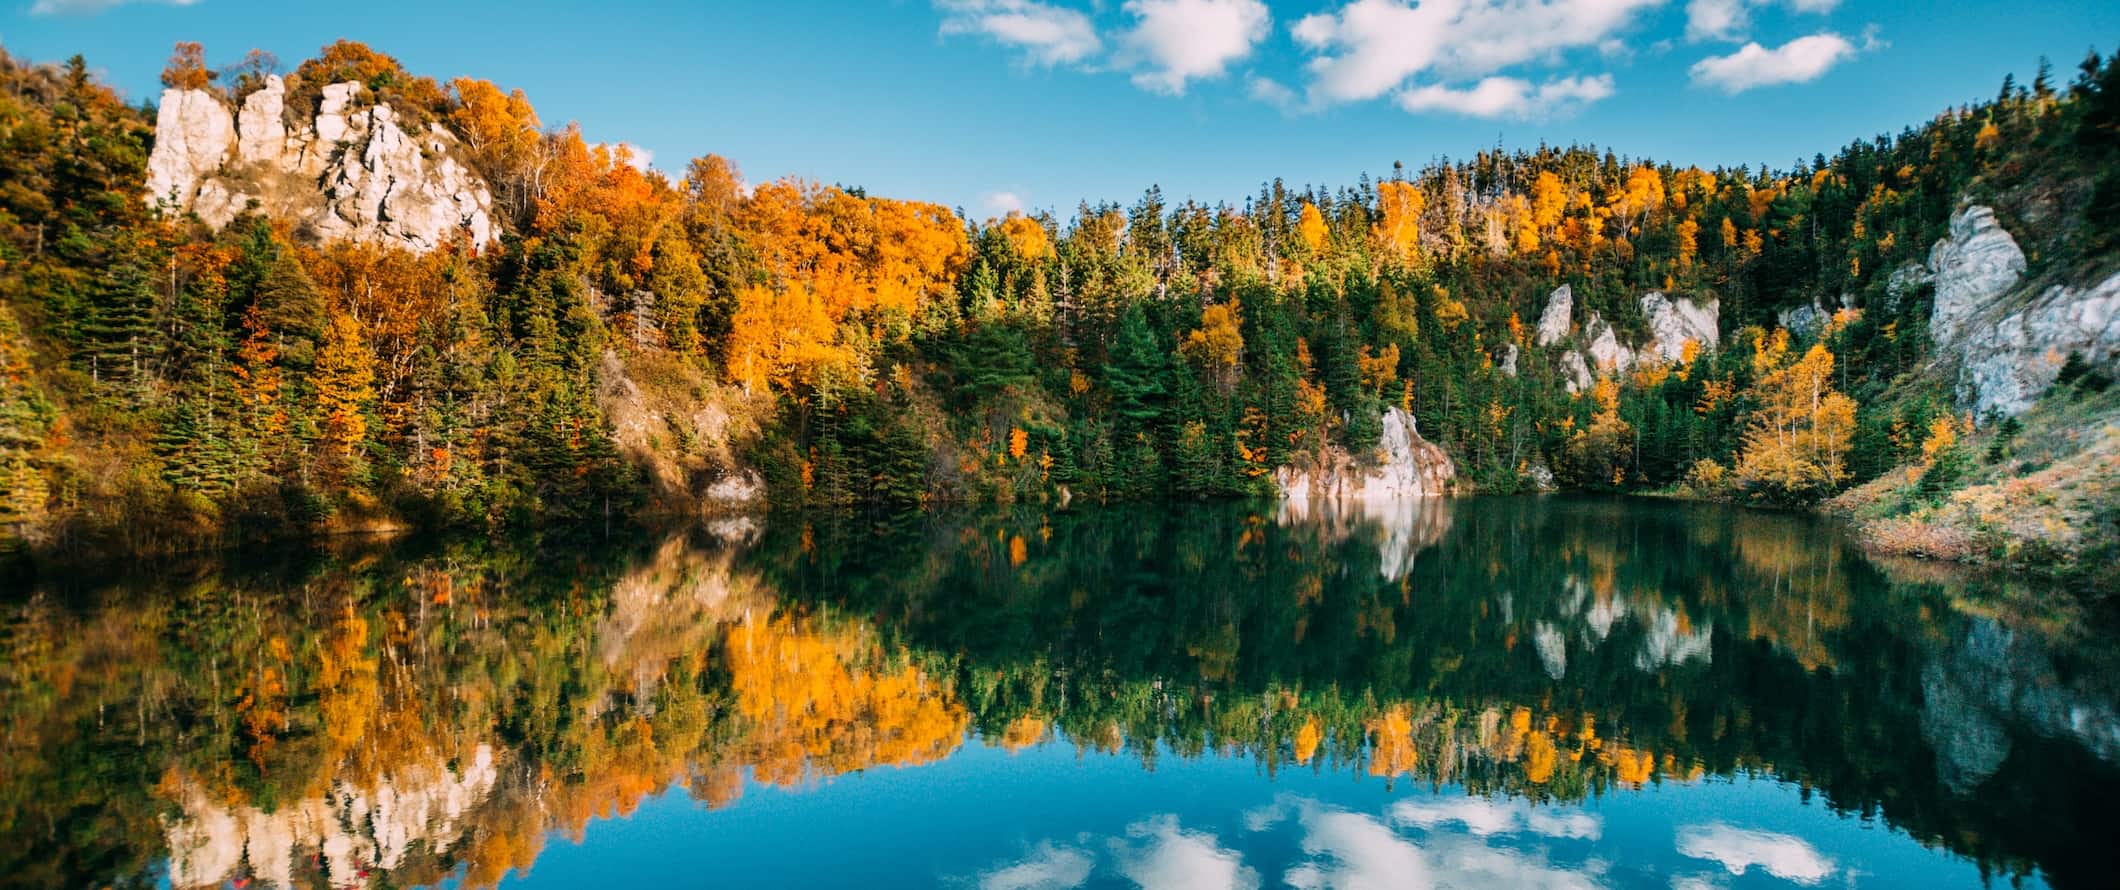 Uma vista deslumbrante do lago e da floresta na pitoresca Nova Escócia, Canadá.